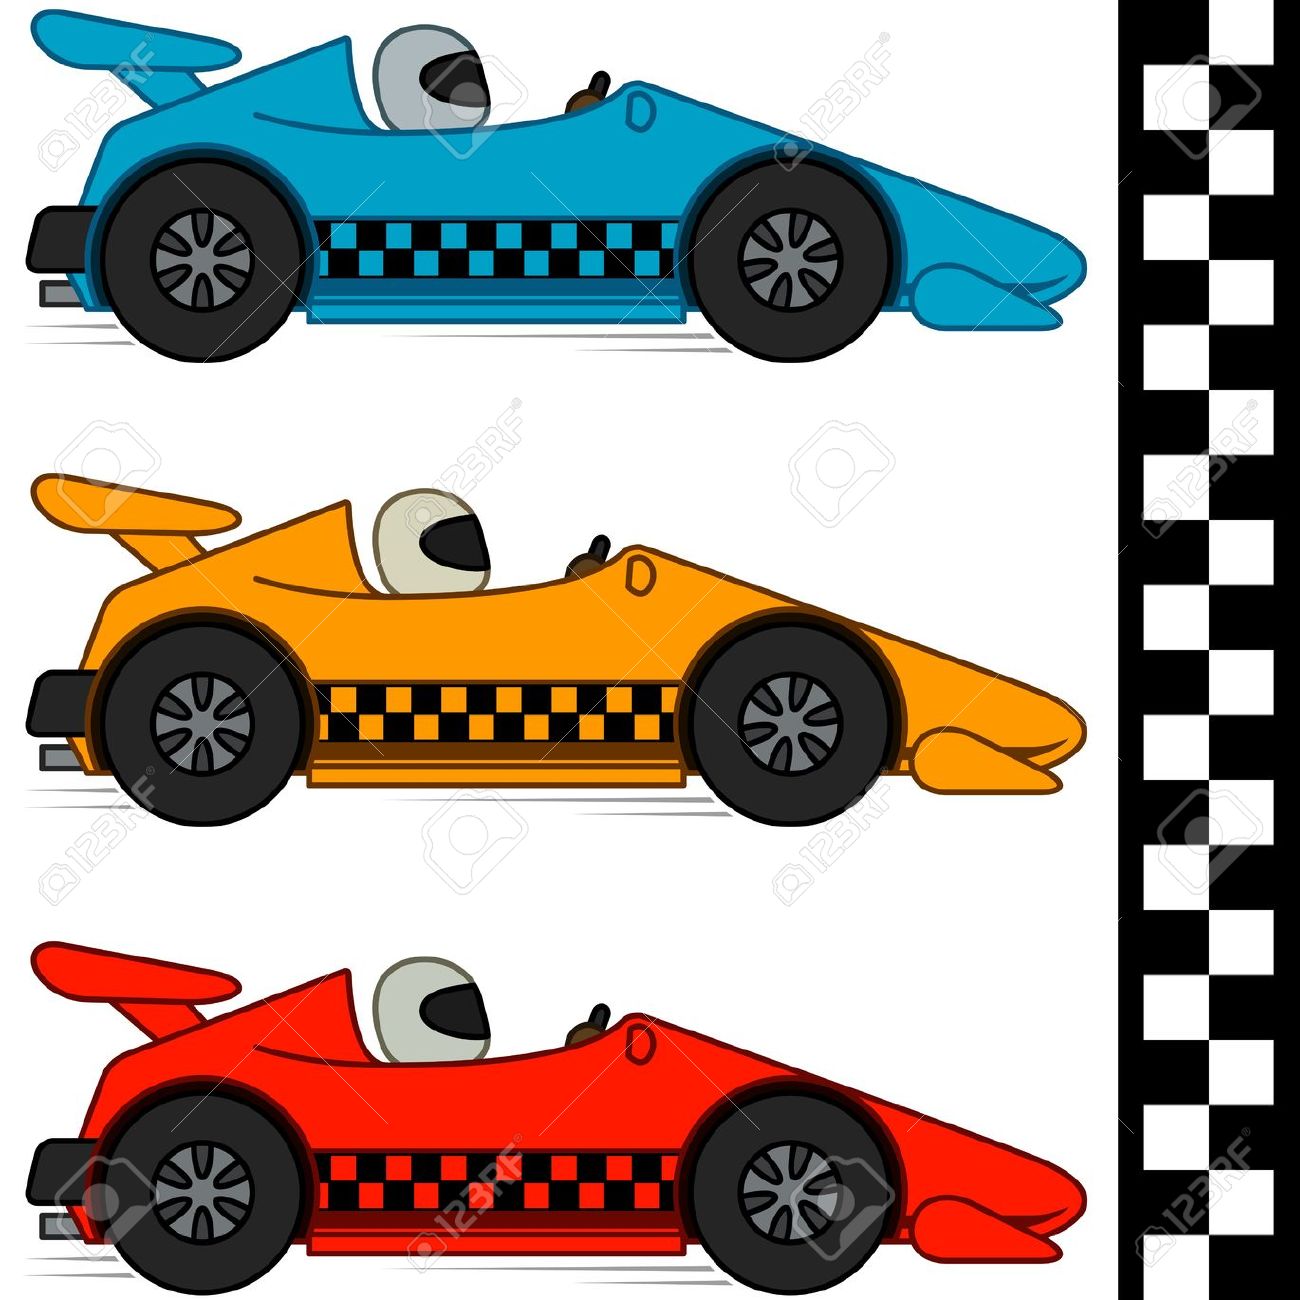 Race Car Clipart #12324 - Race Cars Clip Art